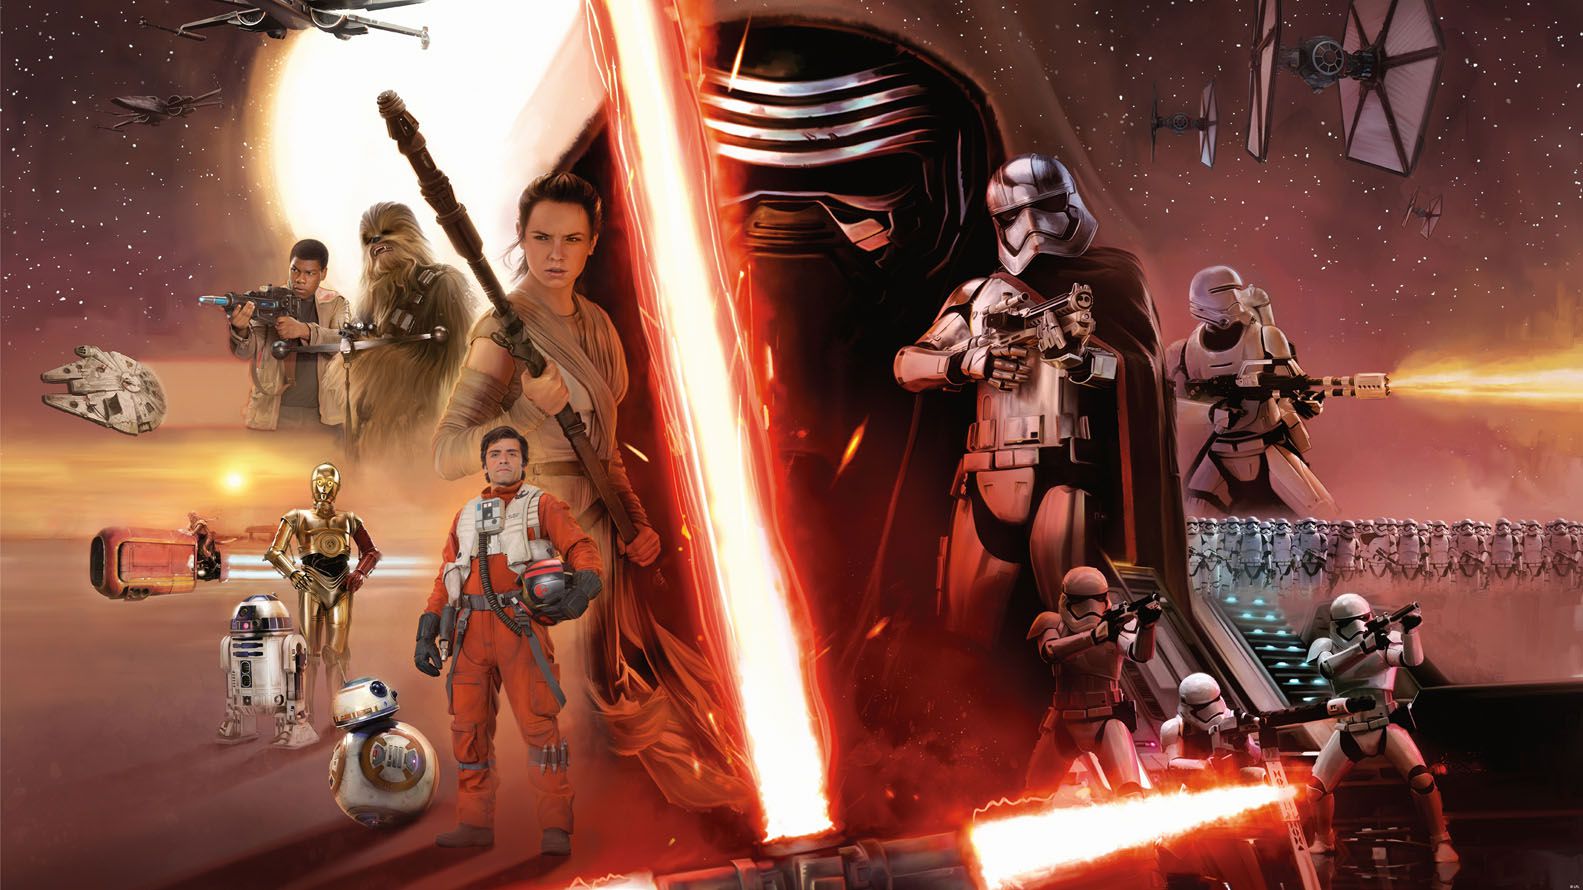 El poster del episodio VII de la saga Star Wars, "El Despertar de la Fuerza" (The Force Awakens), estrenado en 2015 y que contó con la actuación de Jack